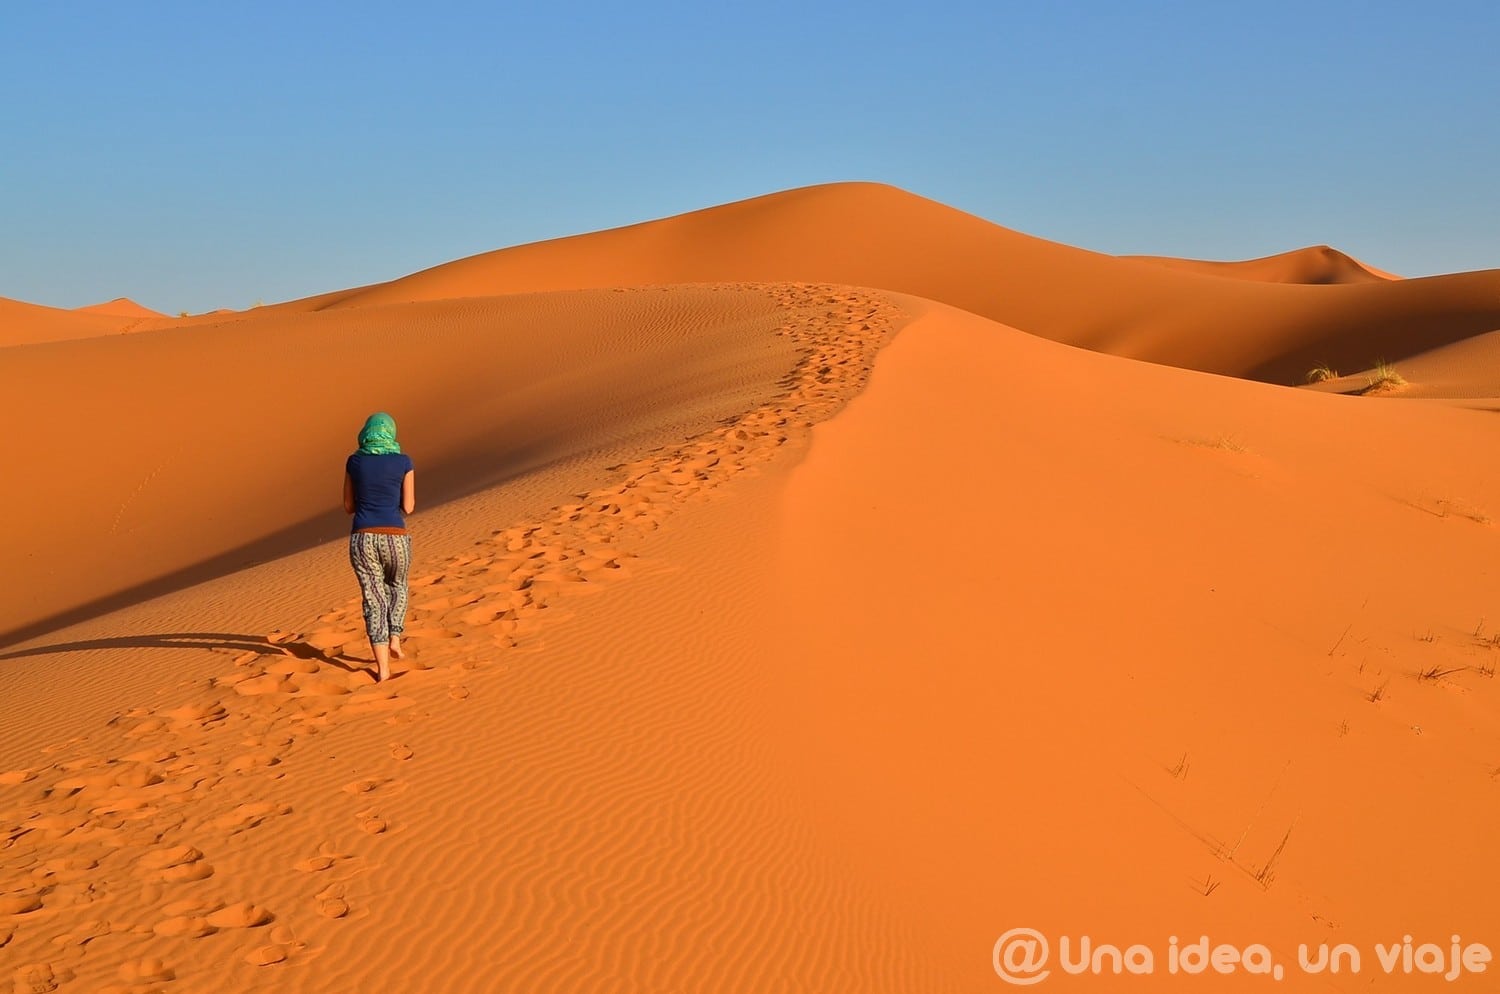 marrakech-marruecos-excursion-ruta-desierto-sahara-unaideaunviaje-30